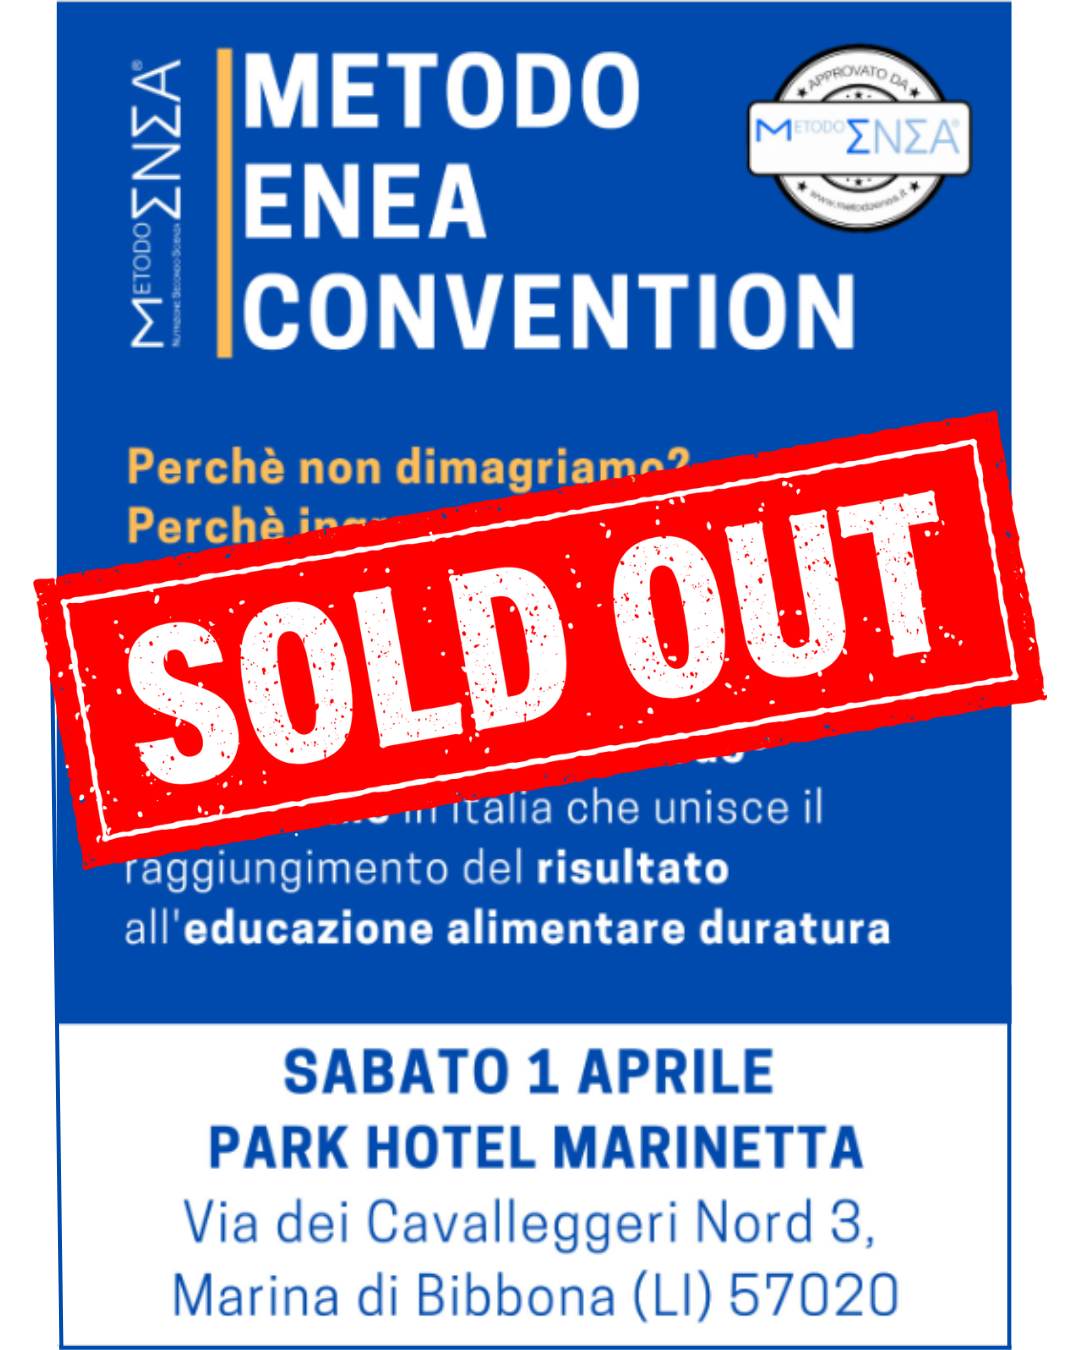 convention_metodo_enea_-_ponsacco_1343160918